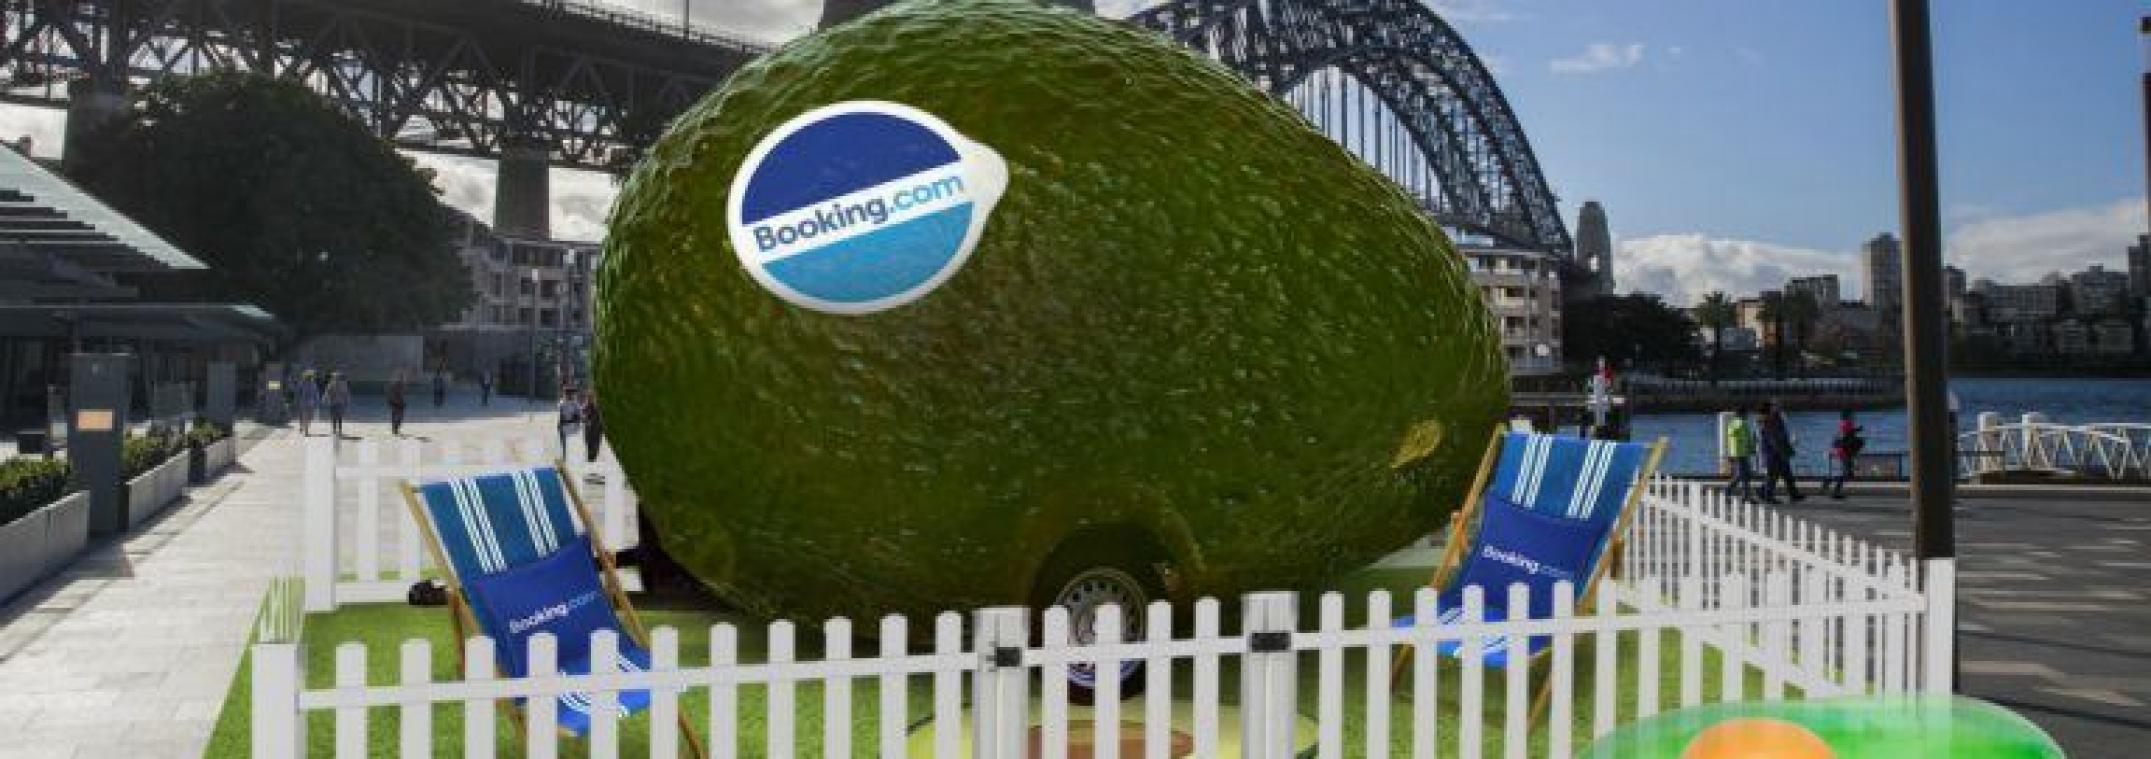 Holy guacamoly! Je kan in een avocadocaravan slapen